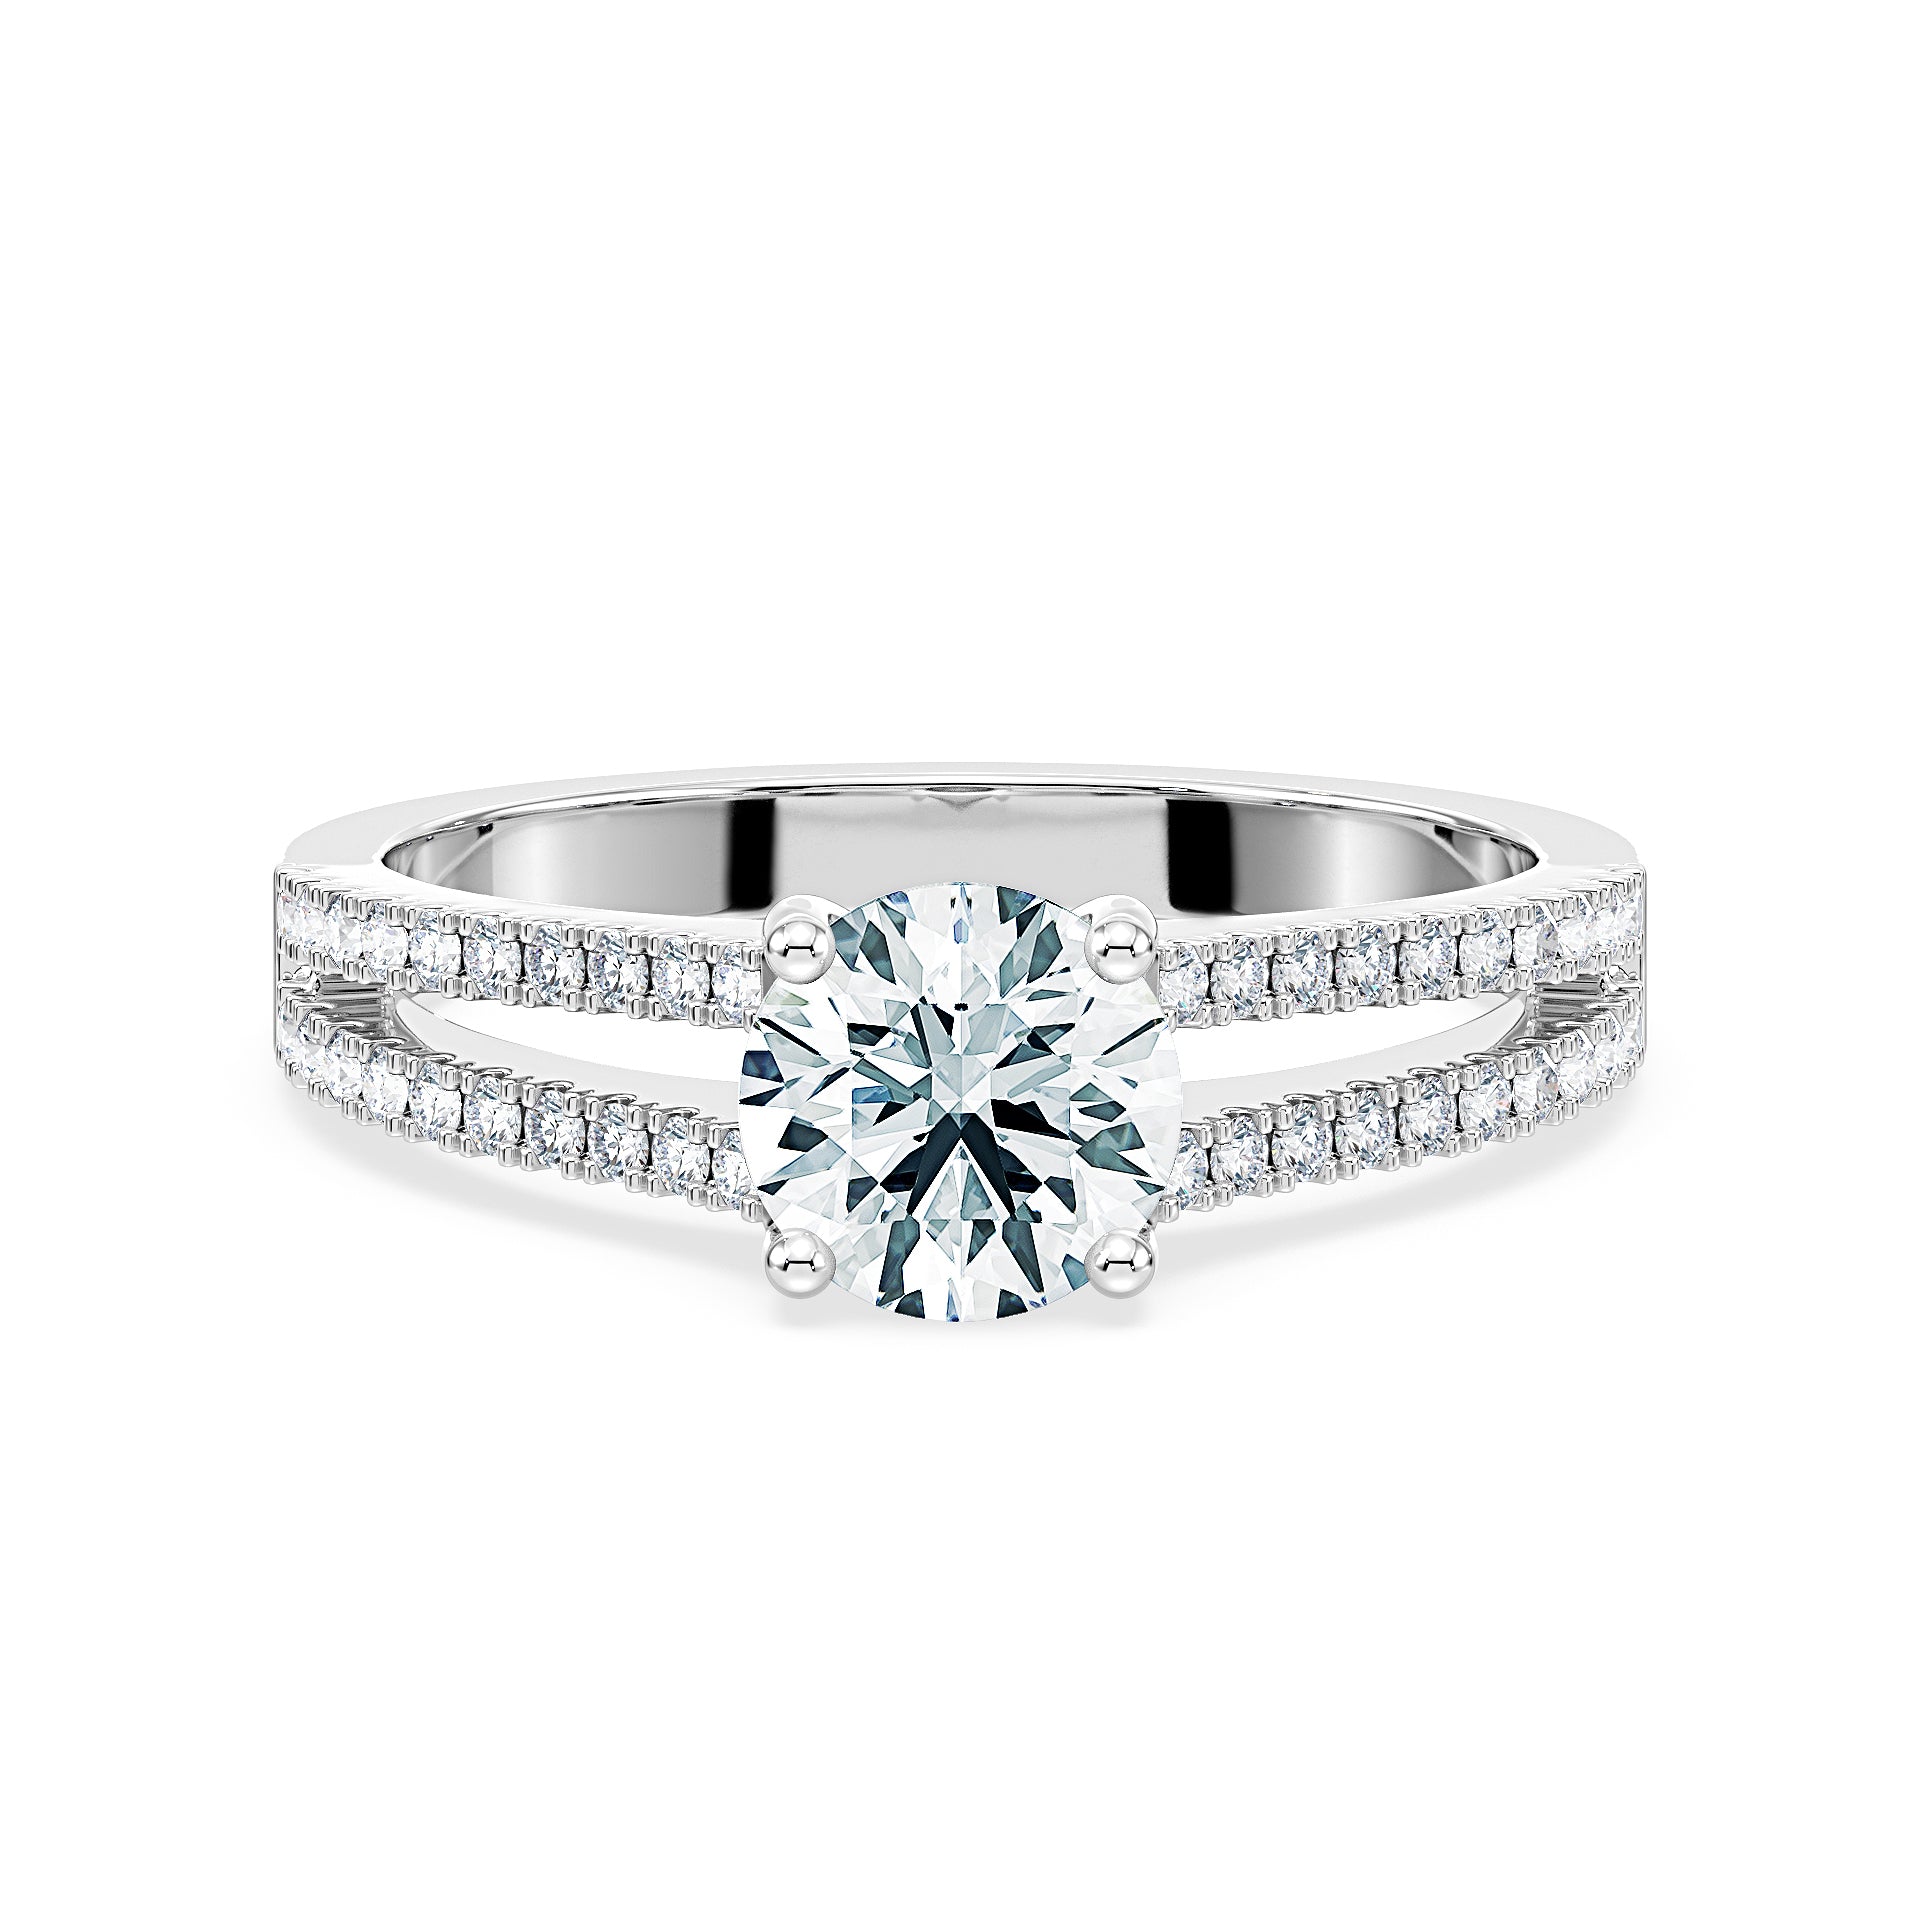 Wedding rings - AsanSka Minerals Ltd.